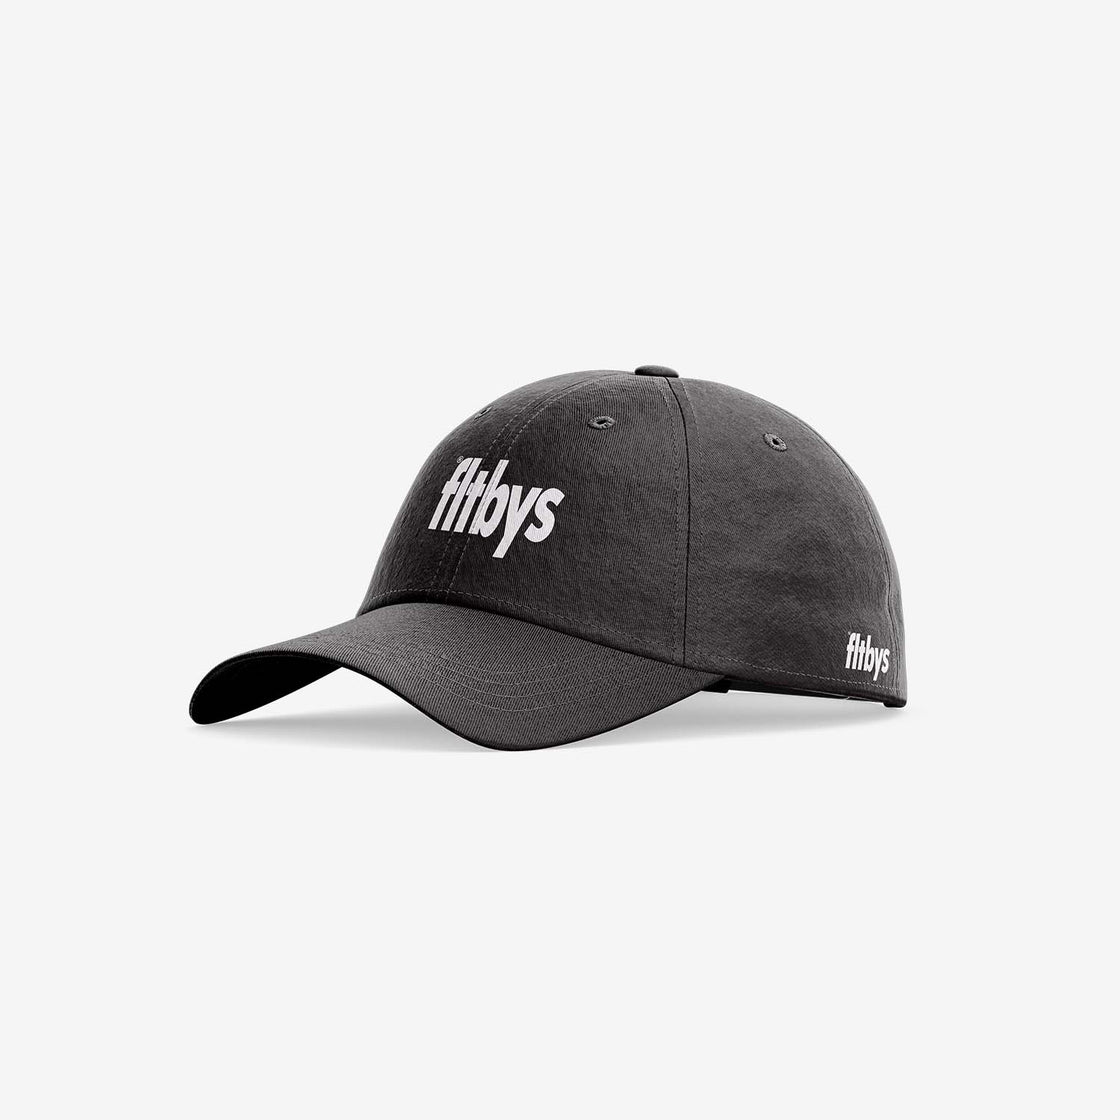 FLTBYS Classic Hat - Charcoal